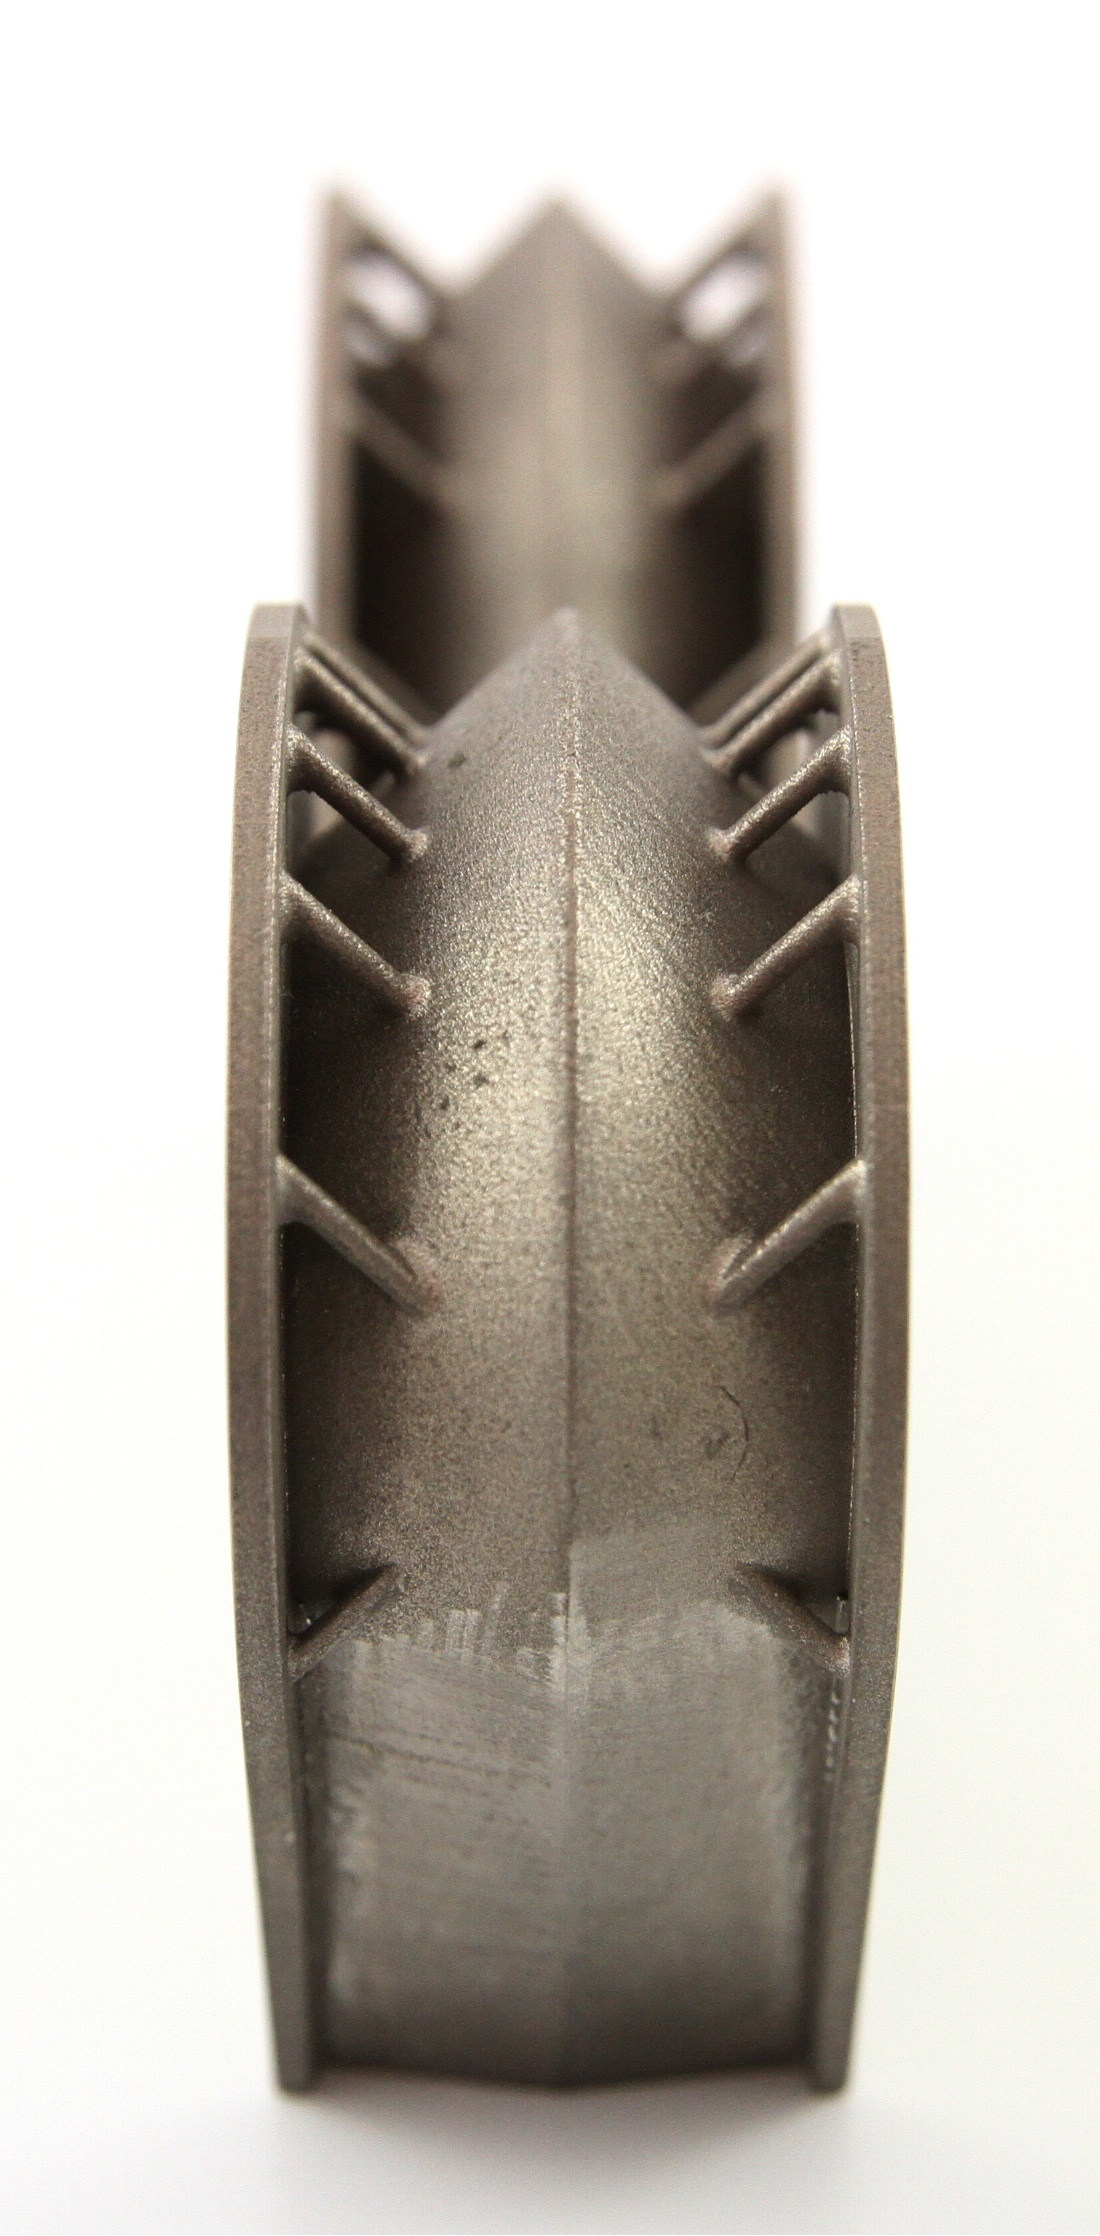 3D-printed titanium insert for spacecraft 